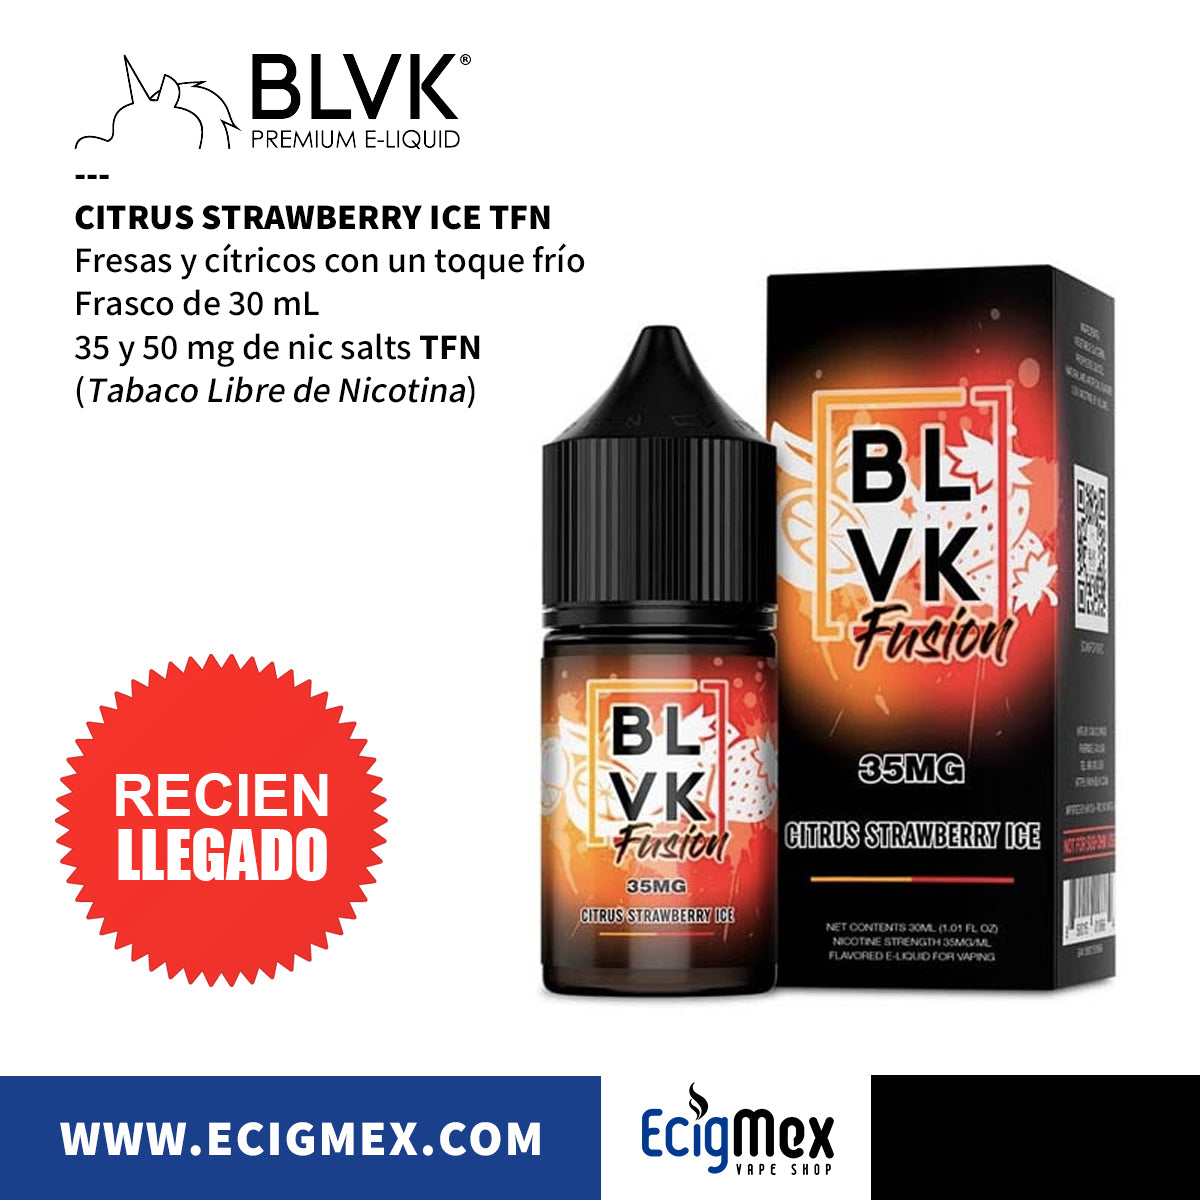 Compra Líquido / Eliquid para vapeo BLVK SALT PLUS varios sabores 30 mL –  EcigMex